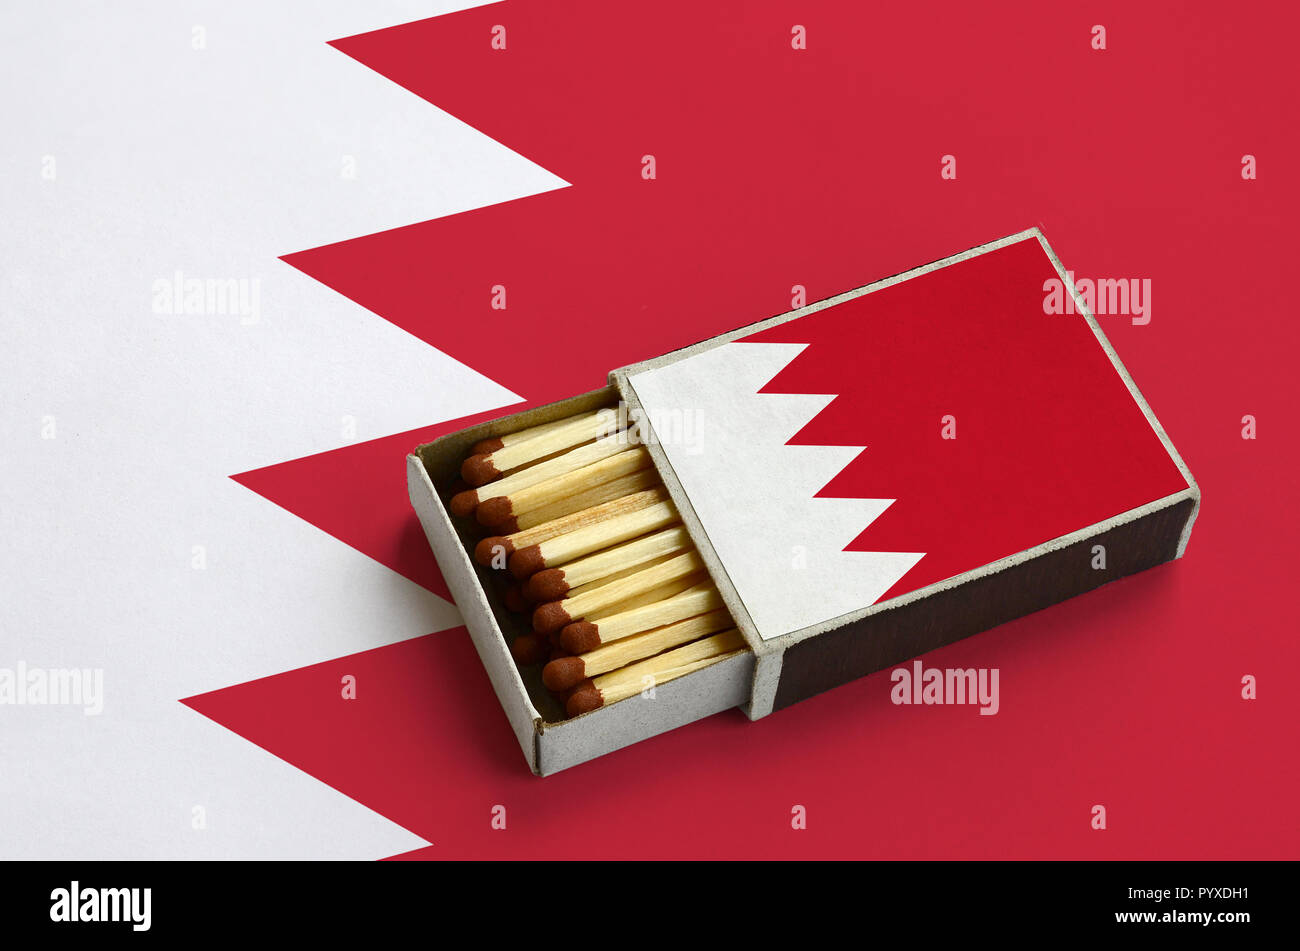 Drapeau de Bahreïn est illustré dans une boîte d'allumettes, qui est rempli avec des allumettes et se trouve sur un grand drapeau. Banque D'Images